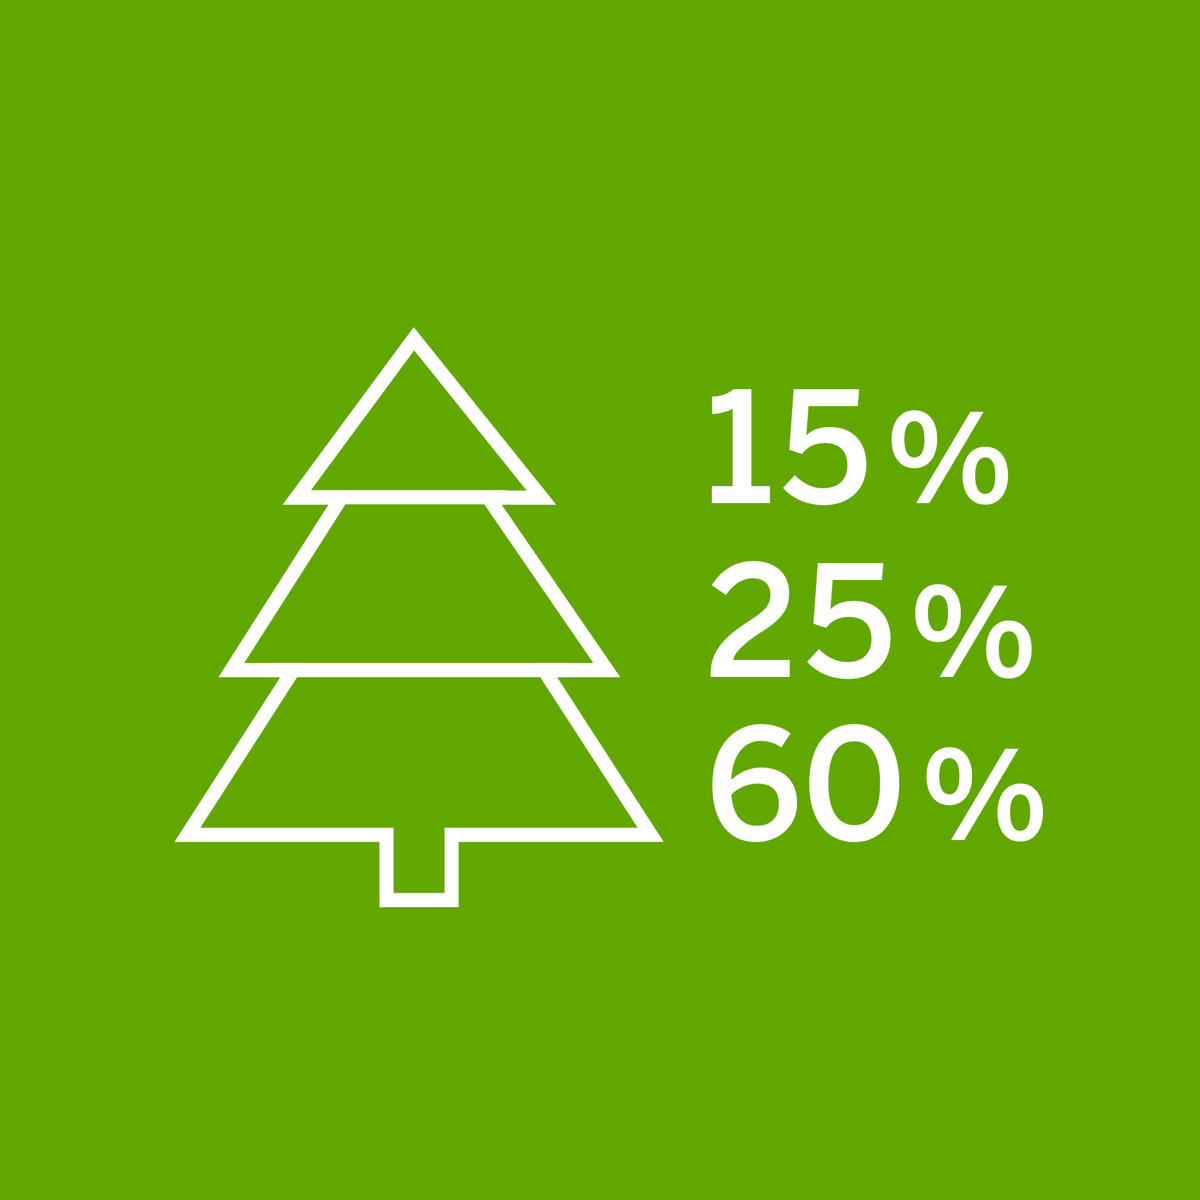 100 % des Baumes werden genutzt: 15 % für die Energiegewinnung, 25 % für die Zellstoffproduktion und 60 % für Schnittholz.